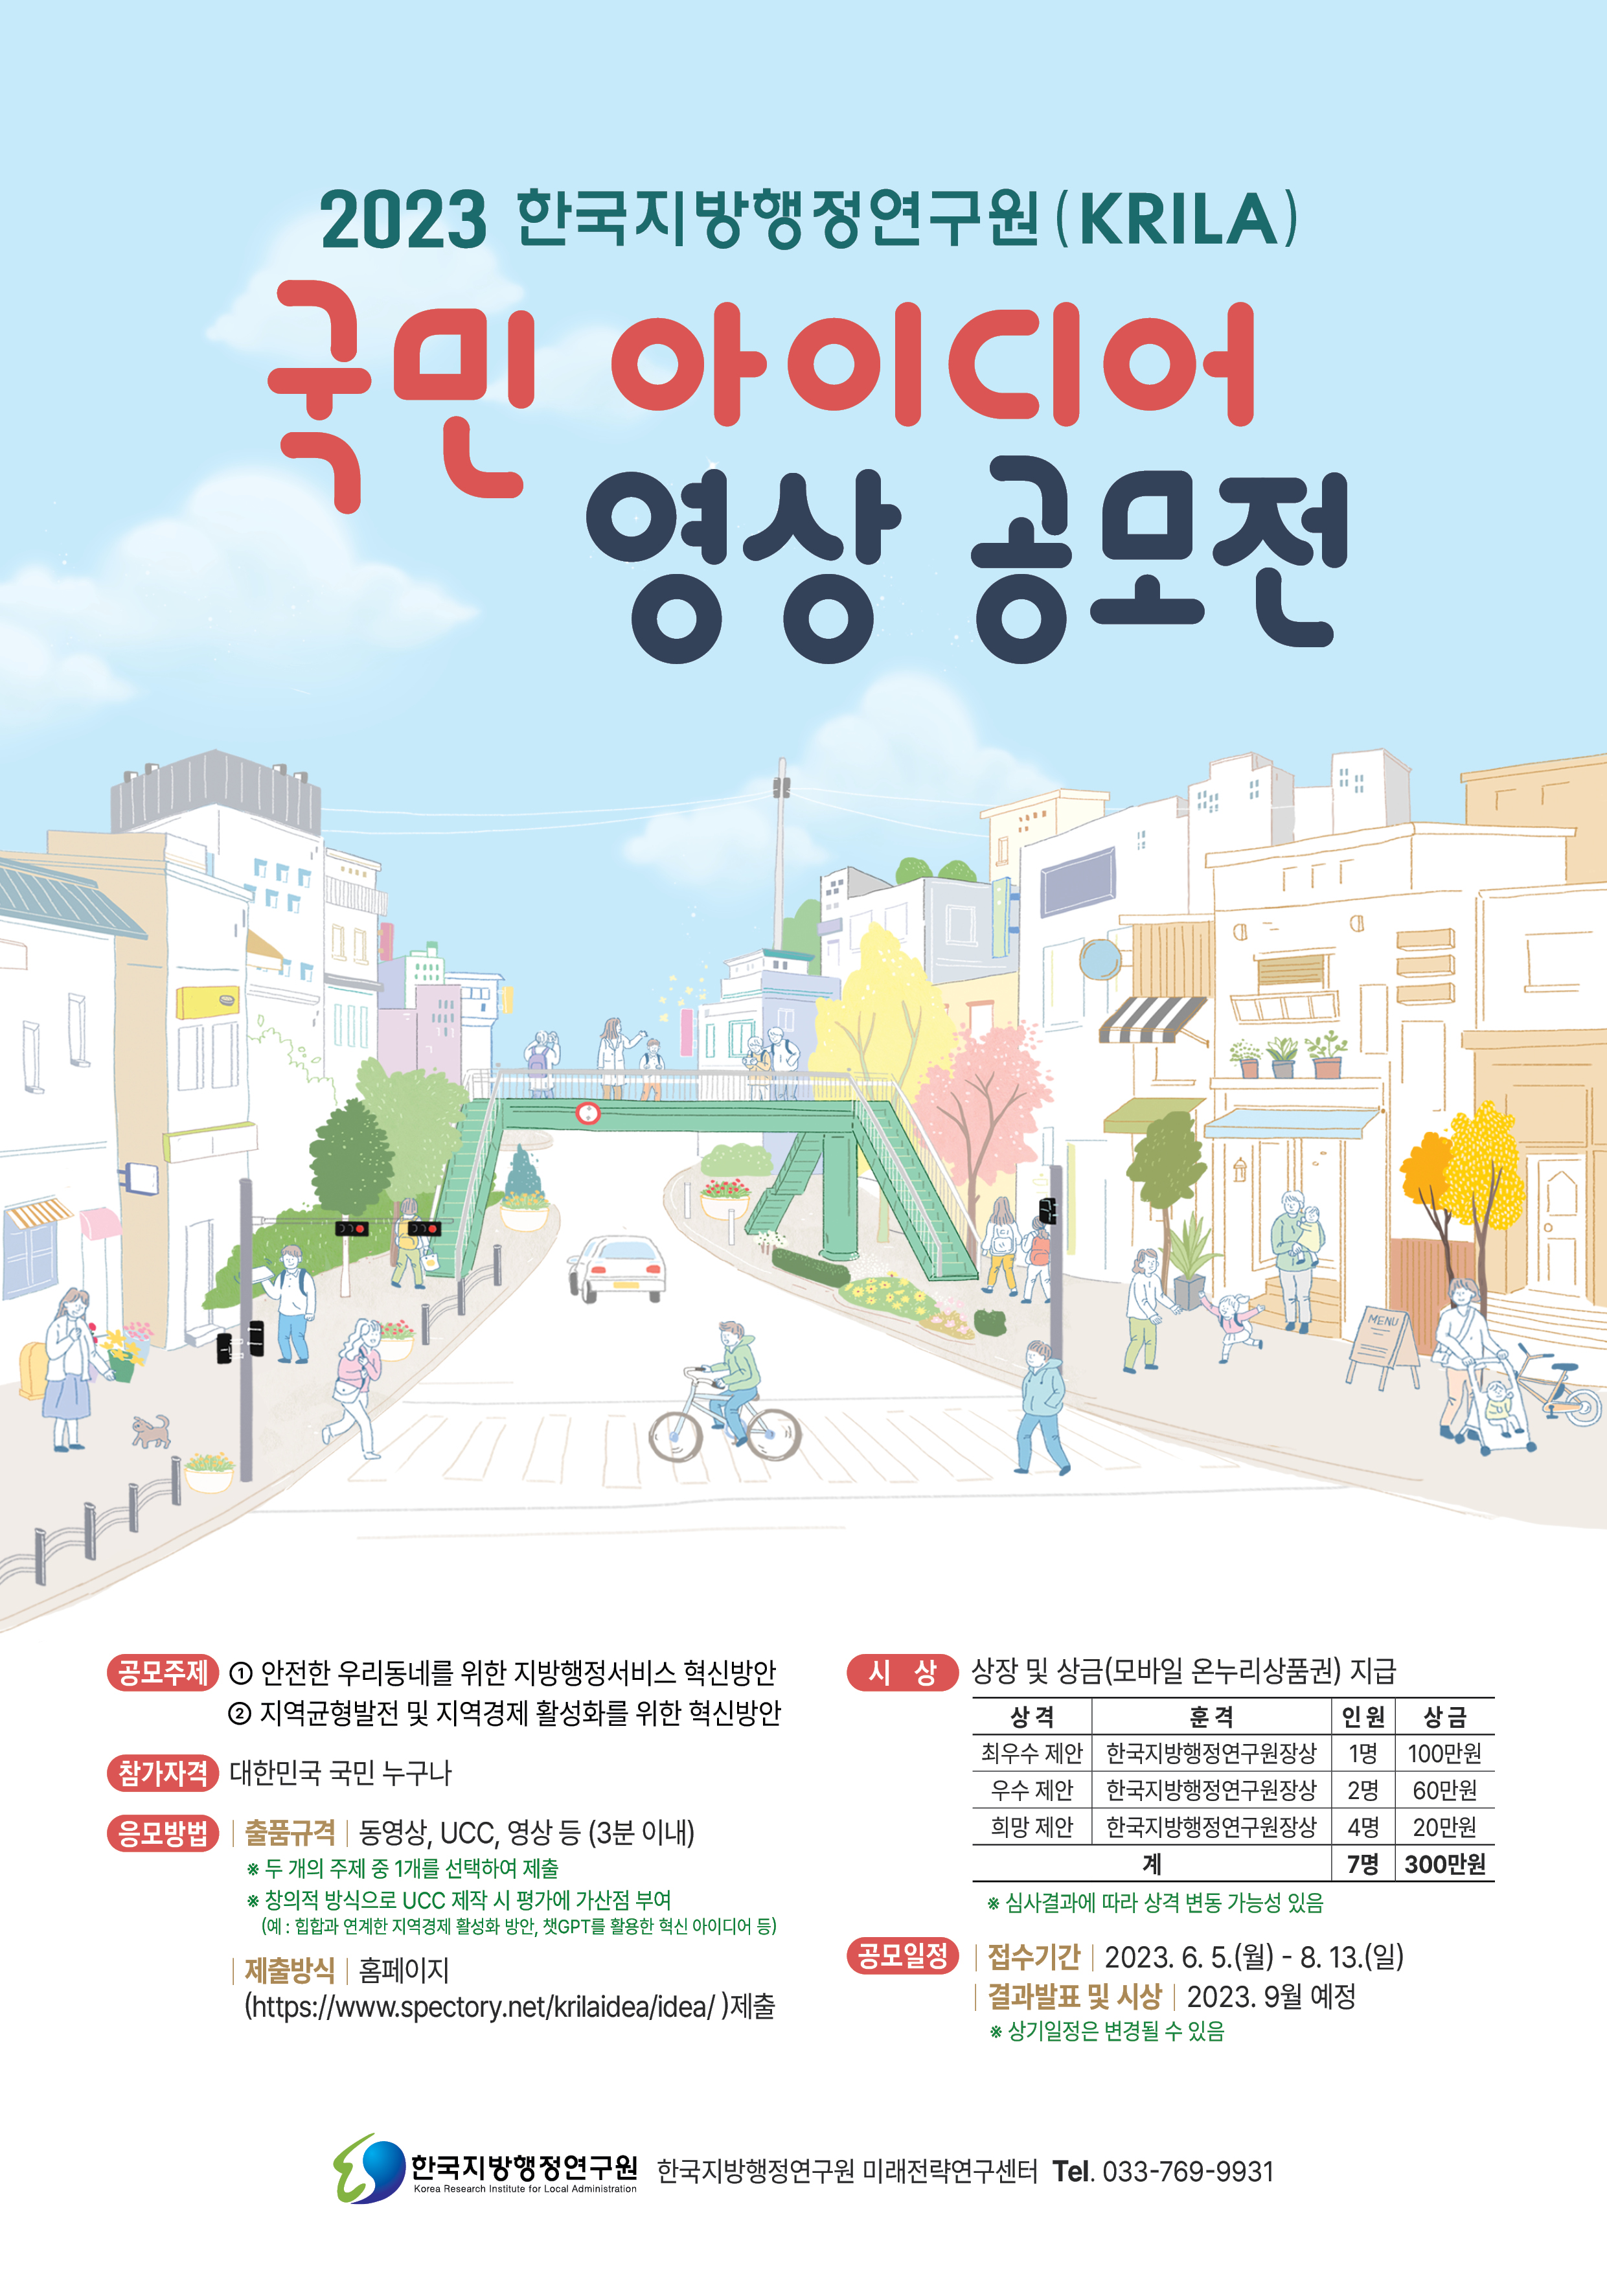 「2023 한국지방행정연구원(KRILA) 국민 아이디어 영상 공모전」 포스터.jpg